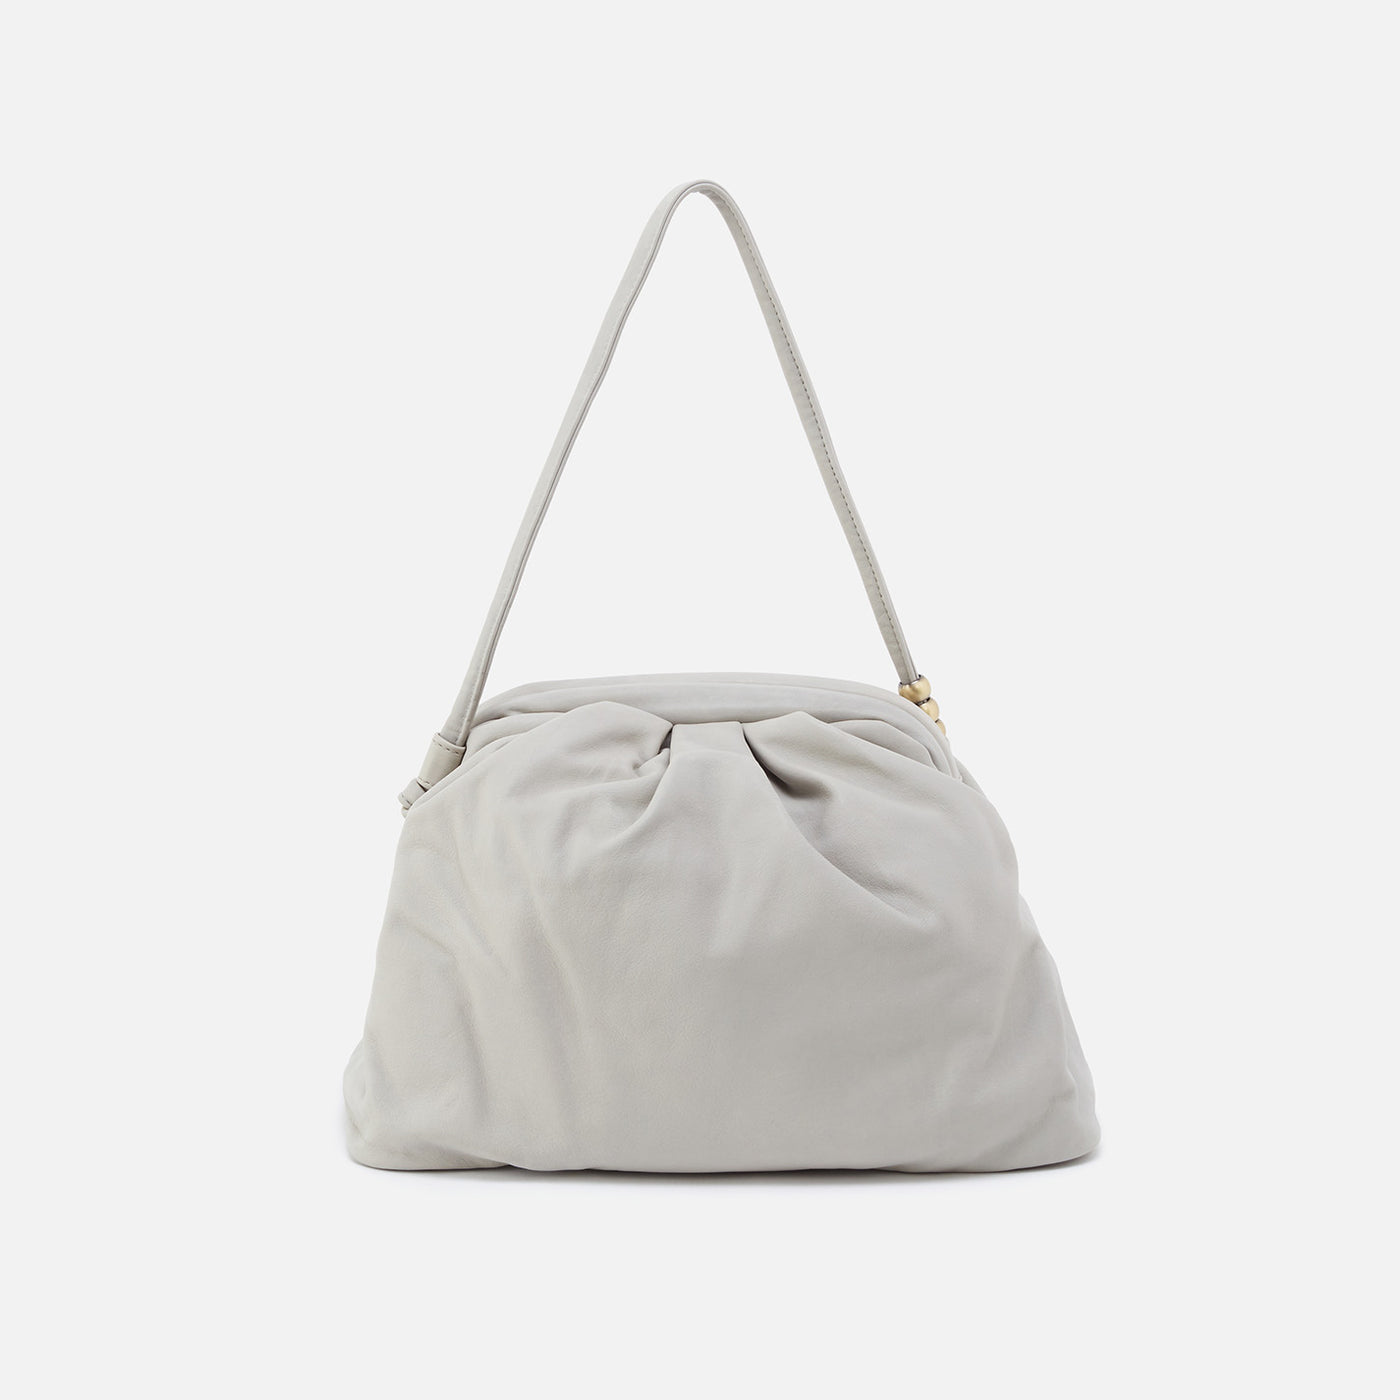 Adalyn Frame Shoulder Bag in Soft Leather - Light Grey